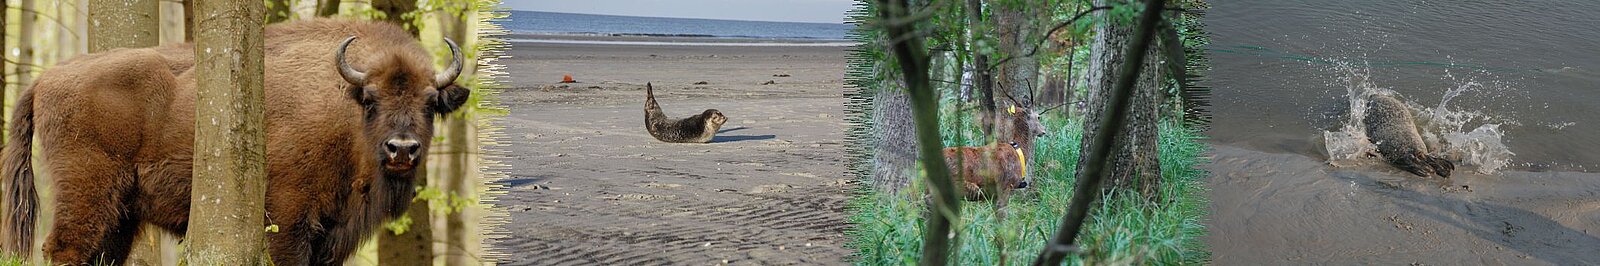 Wisent, Seehund auf Sandbank, Hirsch im Wald, Seehund beim Sprung ins Wasser